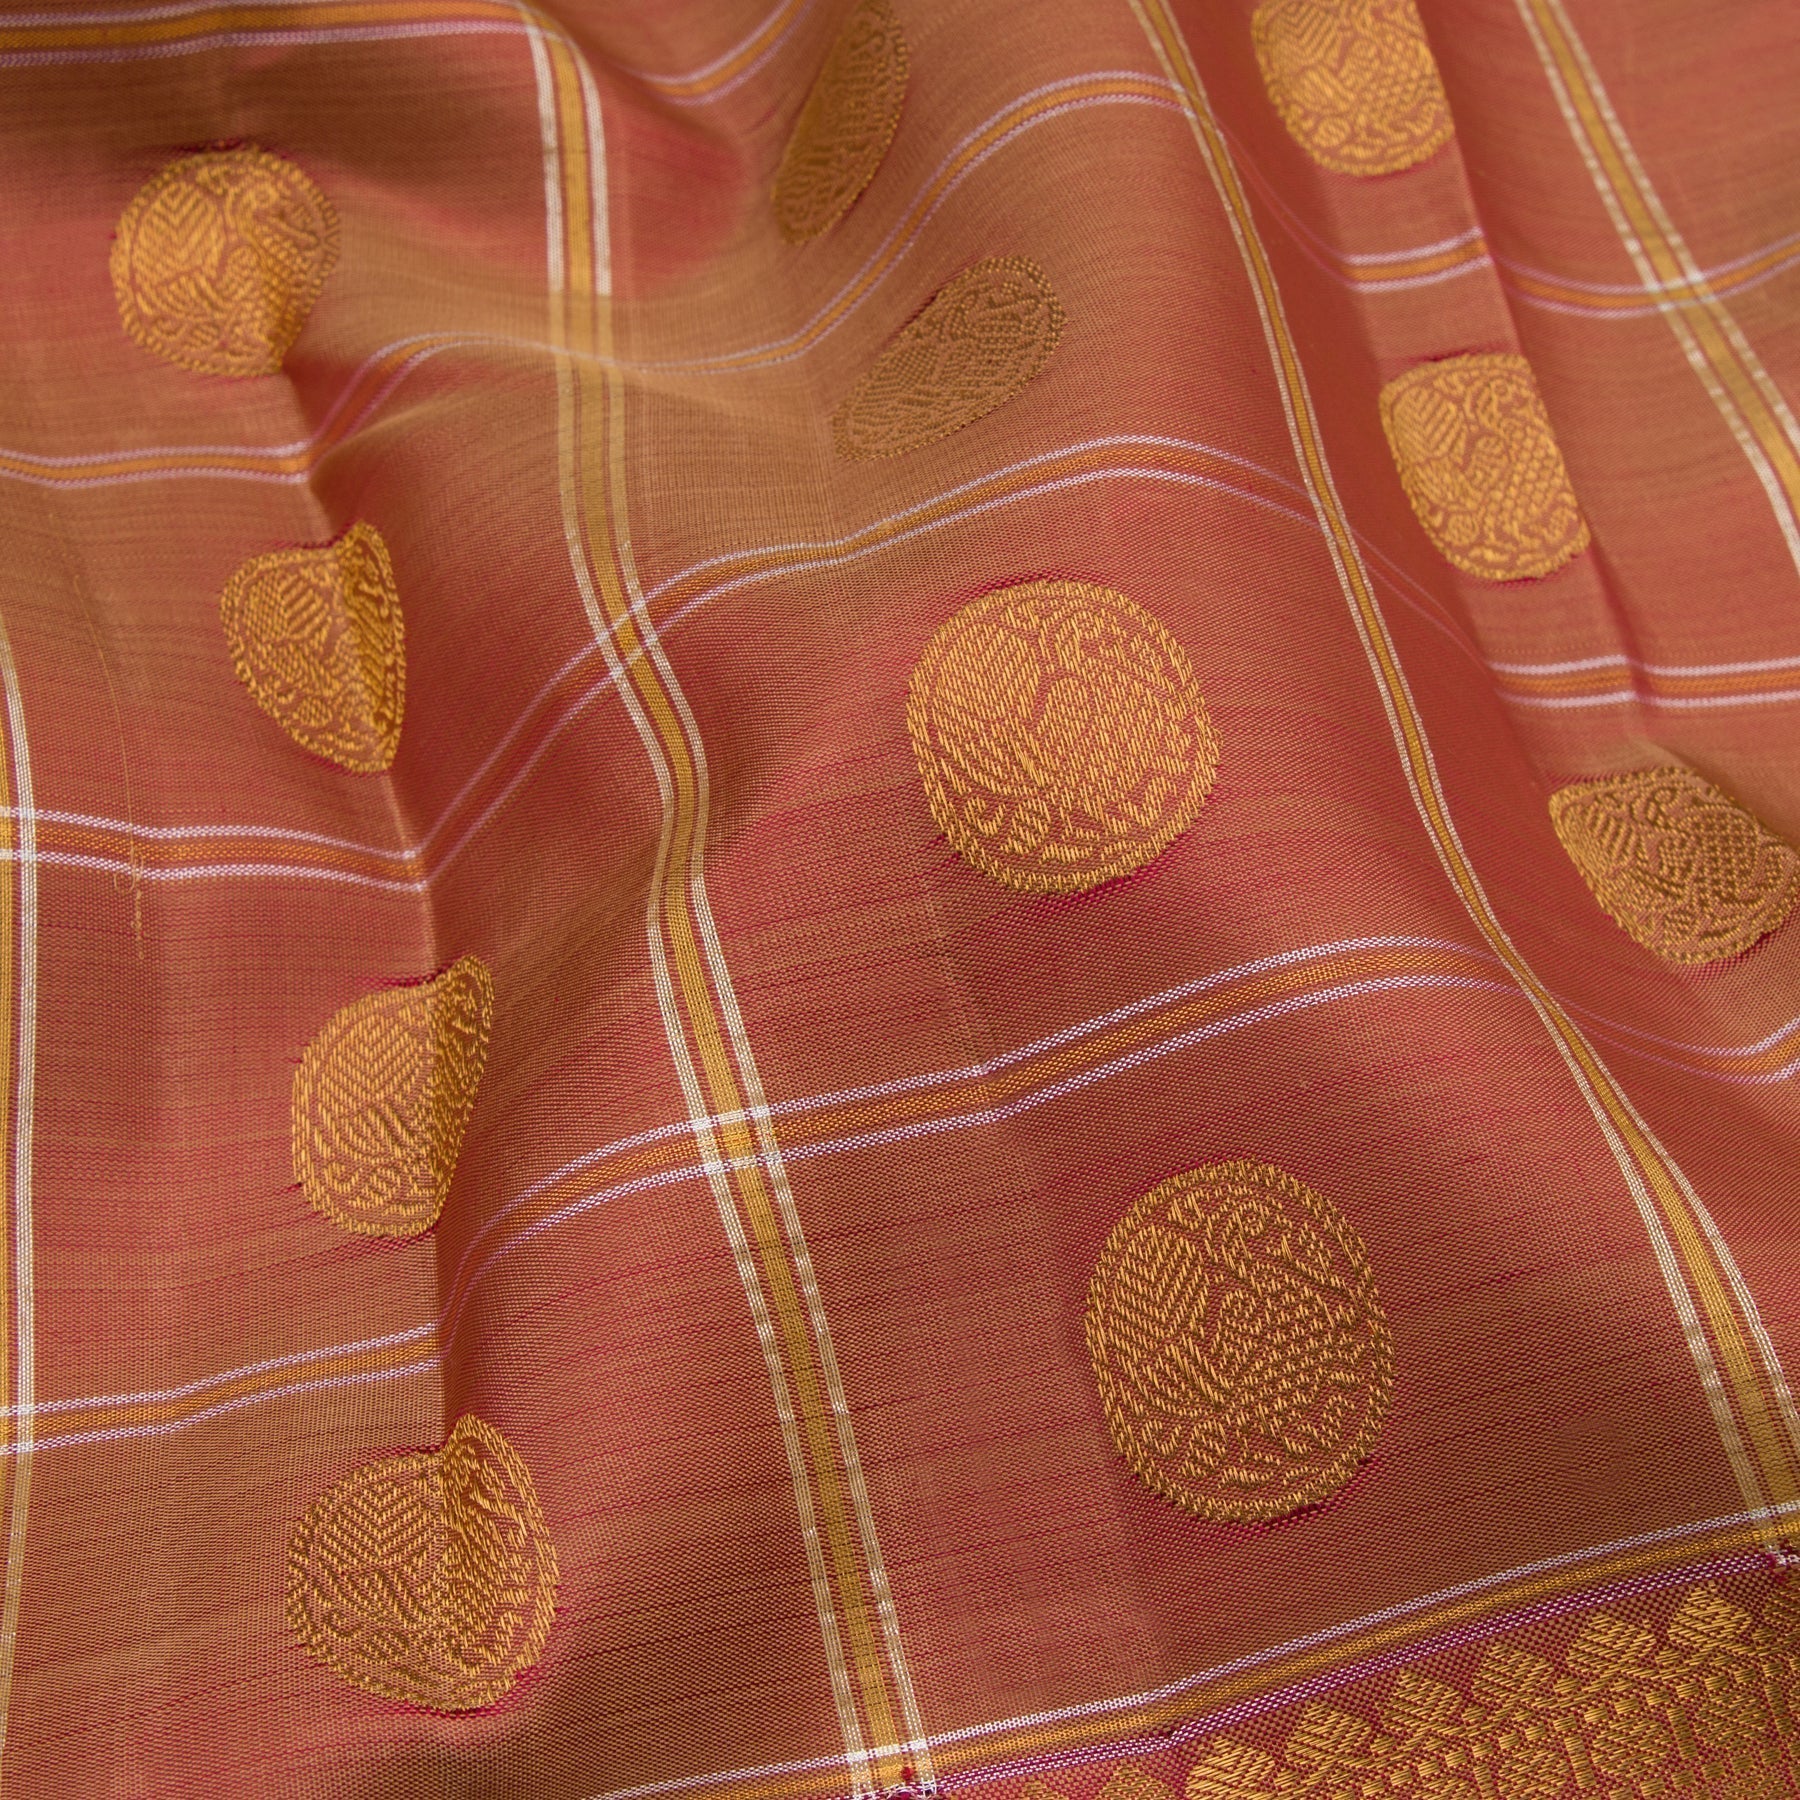 Kanakavalli Kanjivaram Silk Sari 21-100-HS001-05791 - Fabric View